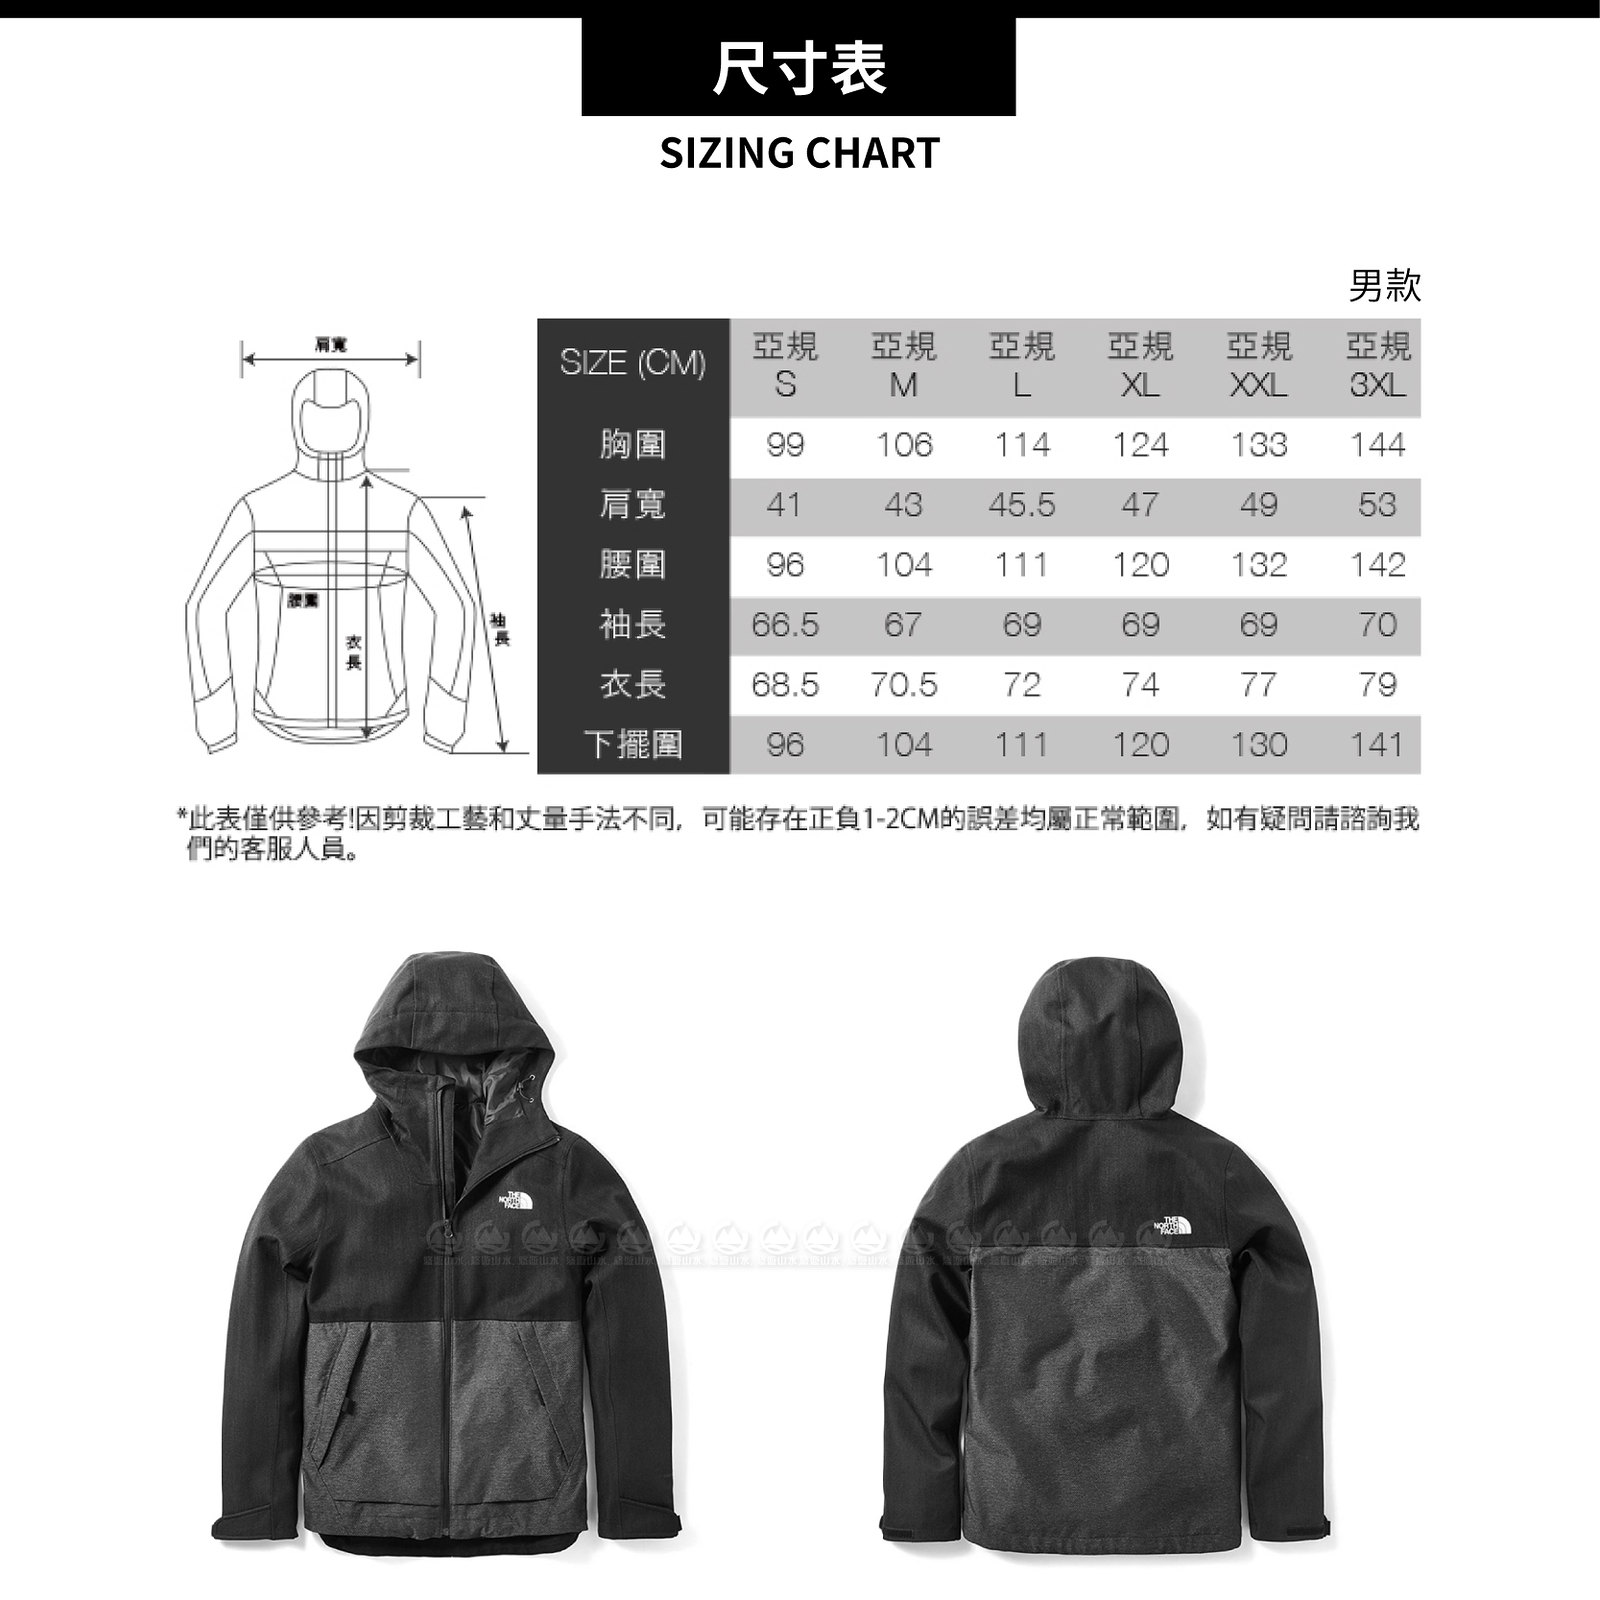 【The North Face 男 DryVent防水外套《黑/中灰》】3VPK/防水外套/防風外套/保暖外套/連帽外套